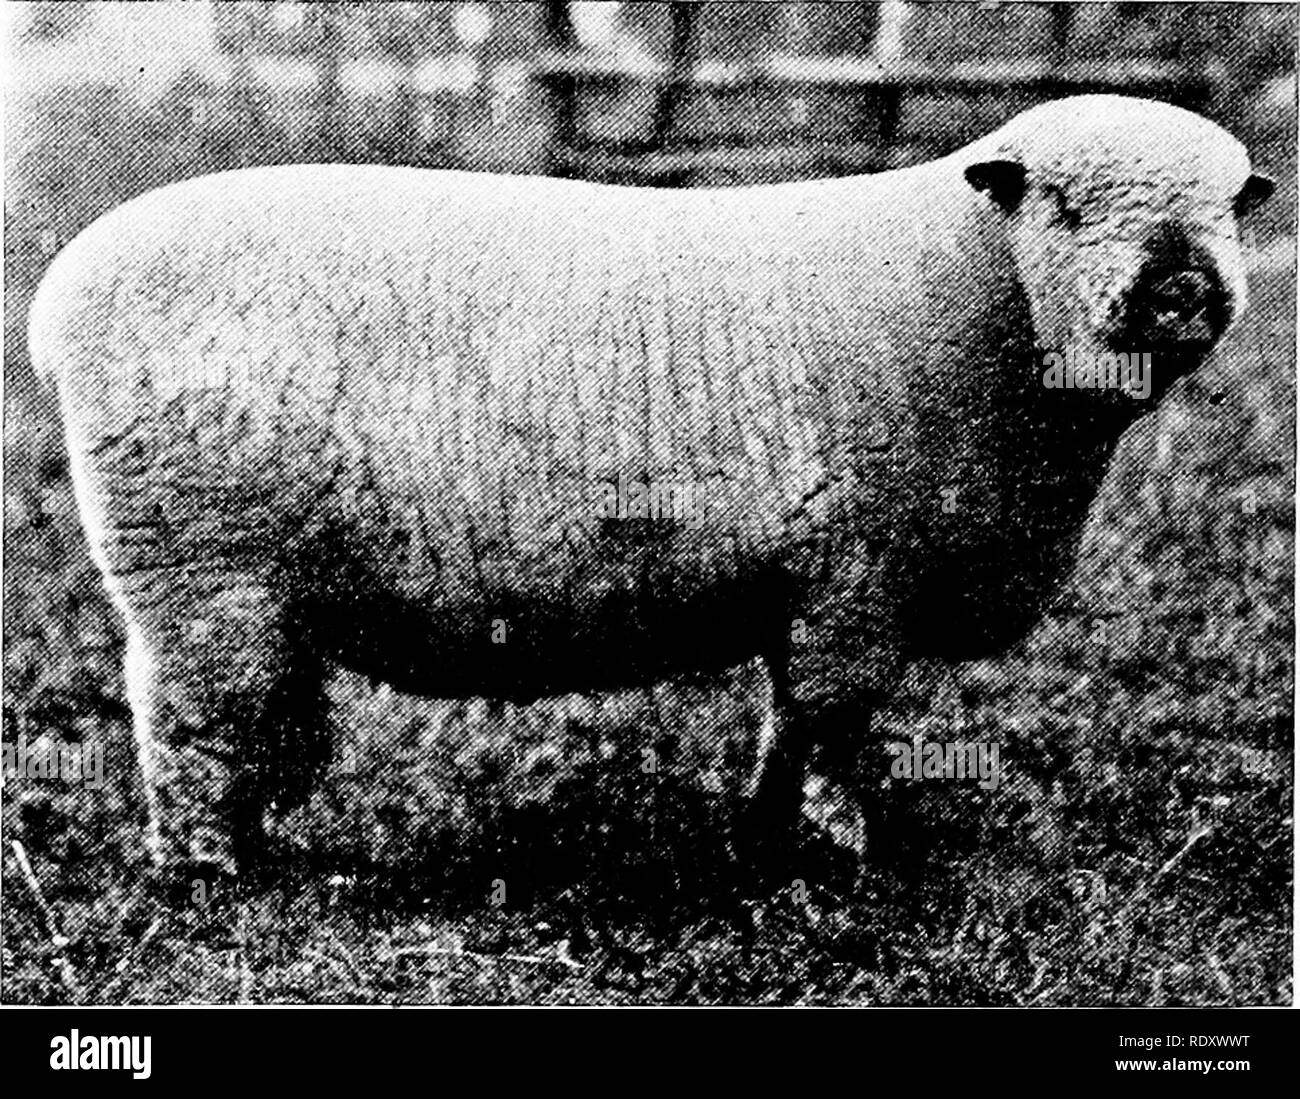 . Produktive Schafzucht. Schafe. 112 Die SHROPSHIRE versucht verweigert werden, dass die shropshire ist ein cross-bred Schafe; die ursprüngliche Rasse wurde referenziert, und der erste Versuch zur Verbesserung war diese incumbrances zu erhalten, und es besteht wenig Zweifel, dass diese getätigt wurde durch das Kreuz des Southdown. Dieses Schaf war für die Downs angepasst, sondern für die Einhausungen der Shropshire etwas mehr fügsam erforderlich war, war daher der Rückgriff auf den Leicester." Es überhaupt wahrscheinlich ist, dass die meisten, wenn nicht alle, von dieser Kreuzung fertig war, bevor es eine bewusste Bewegung in Richtung war Stockfoto